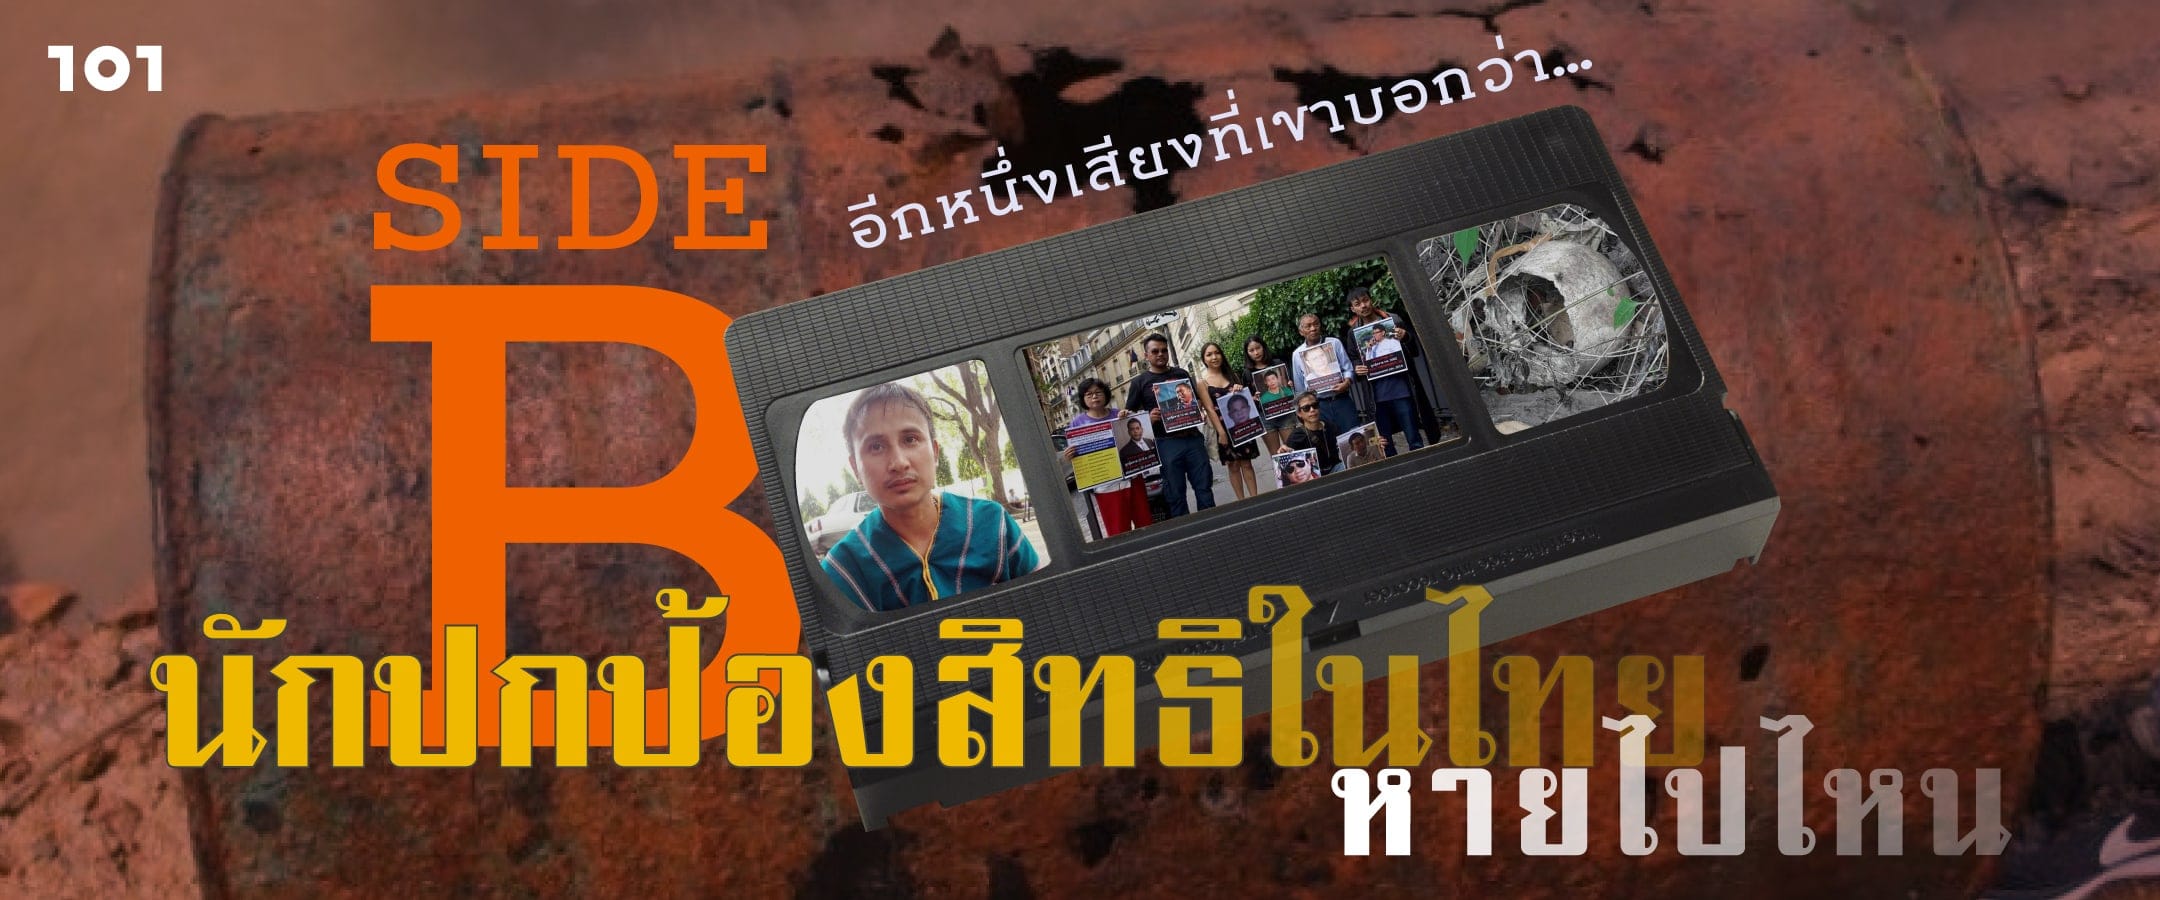 SIDE B อีกเสียงจากที่เขาบอกว่า… “นักปกป้องสิทธิในไทยหายไปไหน”